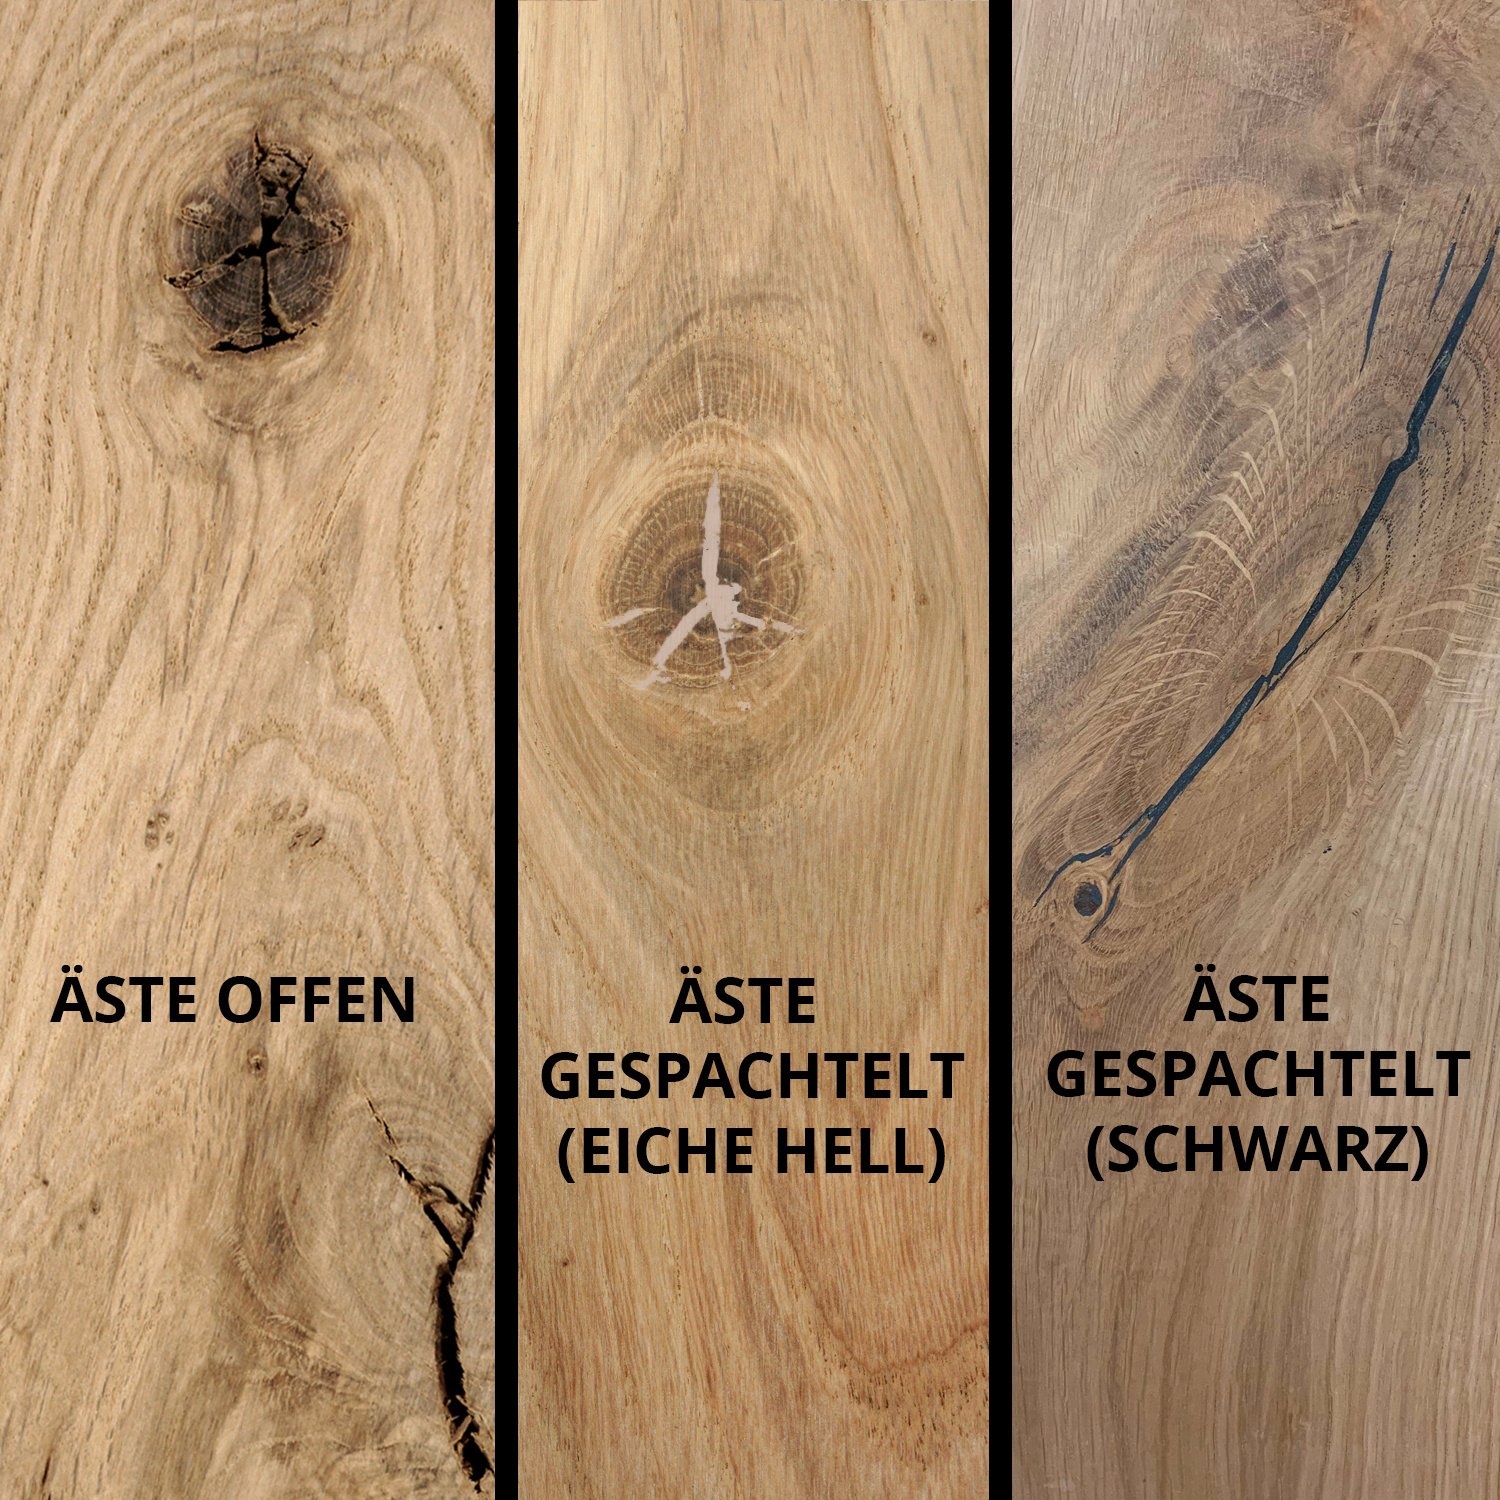  Tischplatte Eiche rund - 4 cm dick (1-Schicht) - Breite Lamellen (10 - 12 cm breit) - Eichenholz rustikal - verleimt & künstlich getrocknet (HF 8-12%) - verschiedene Größen